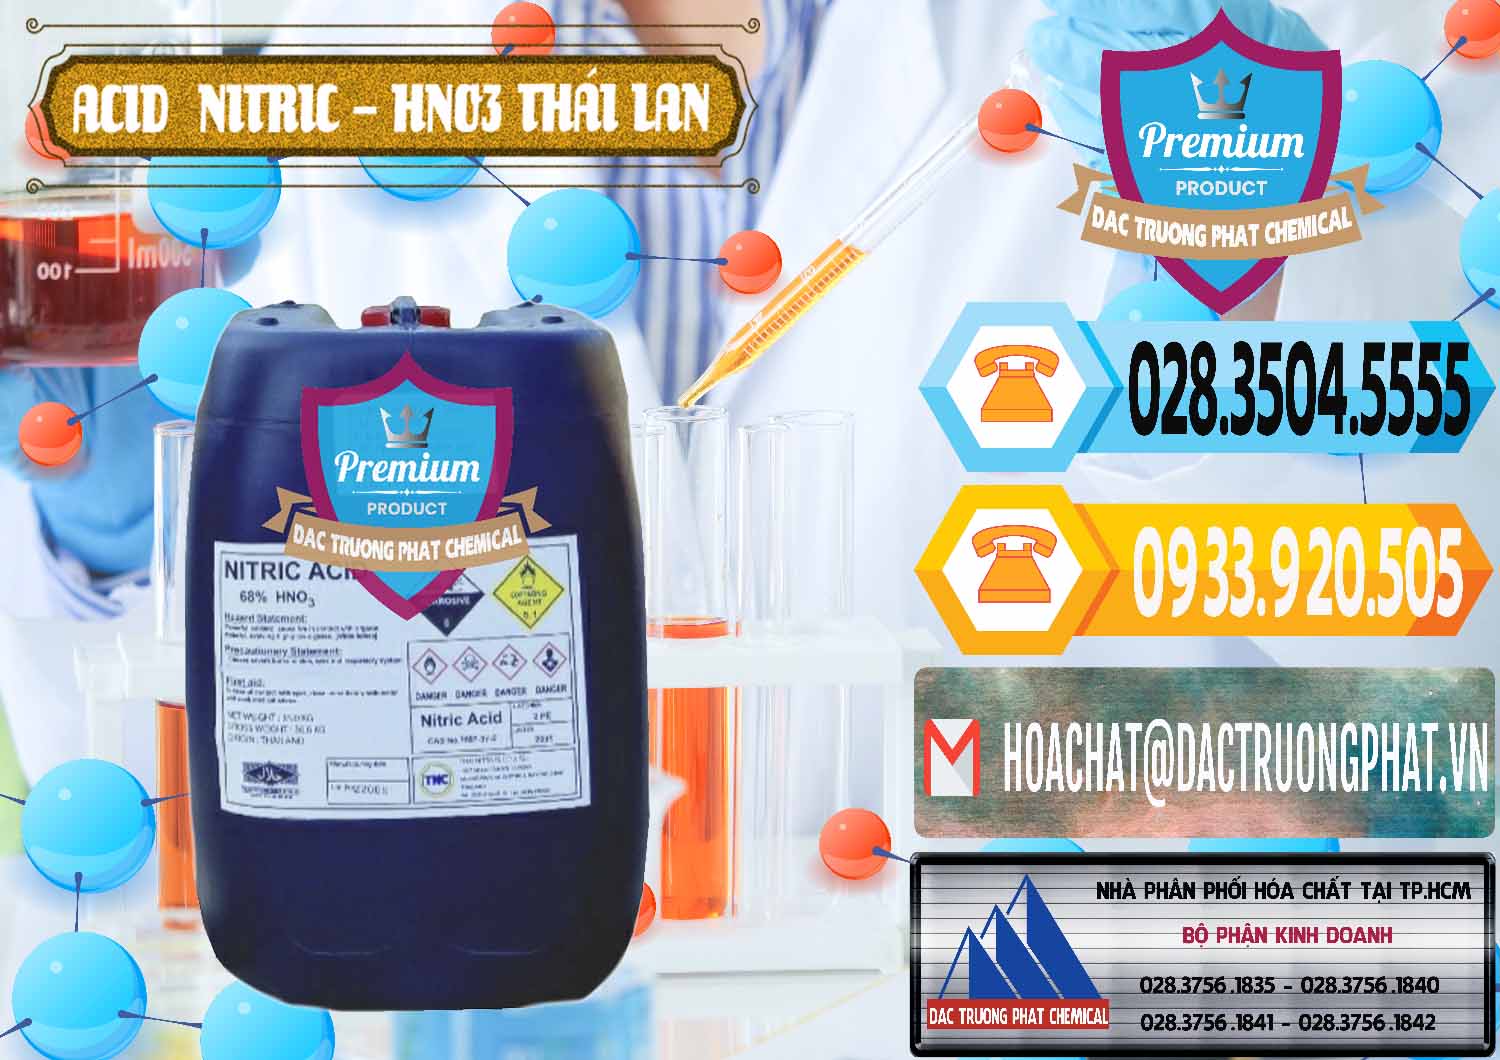 Bán ( phân phối ) Acid Nitric – Axit Nitric HNO3 Thái Lan Thailand - 0344 - Cty cung cấp ( nhập khẩu ) hóa chất tại TP.HCM - hoachattayrua.net